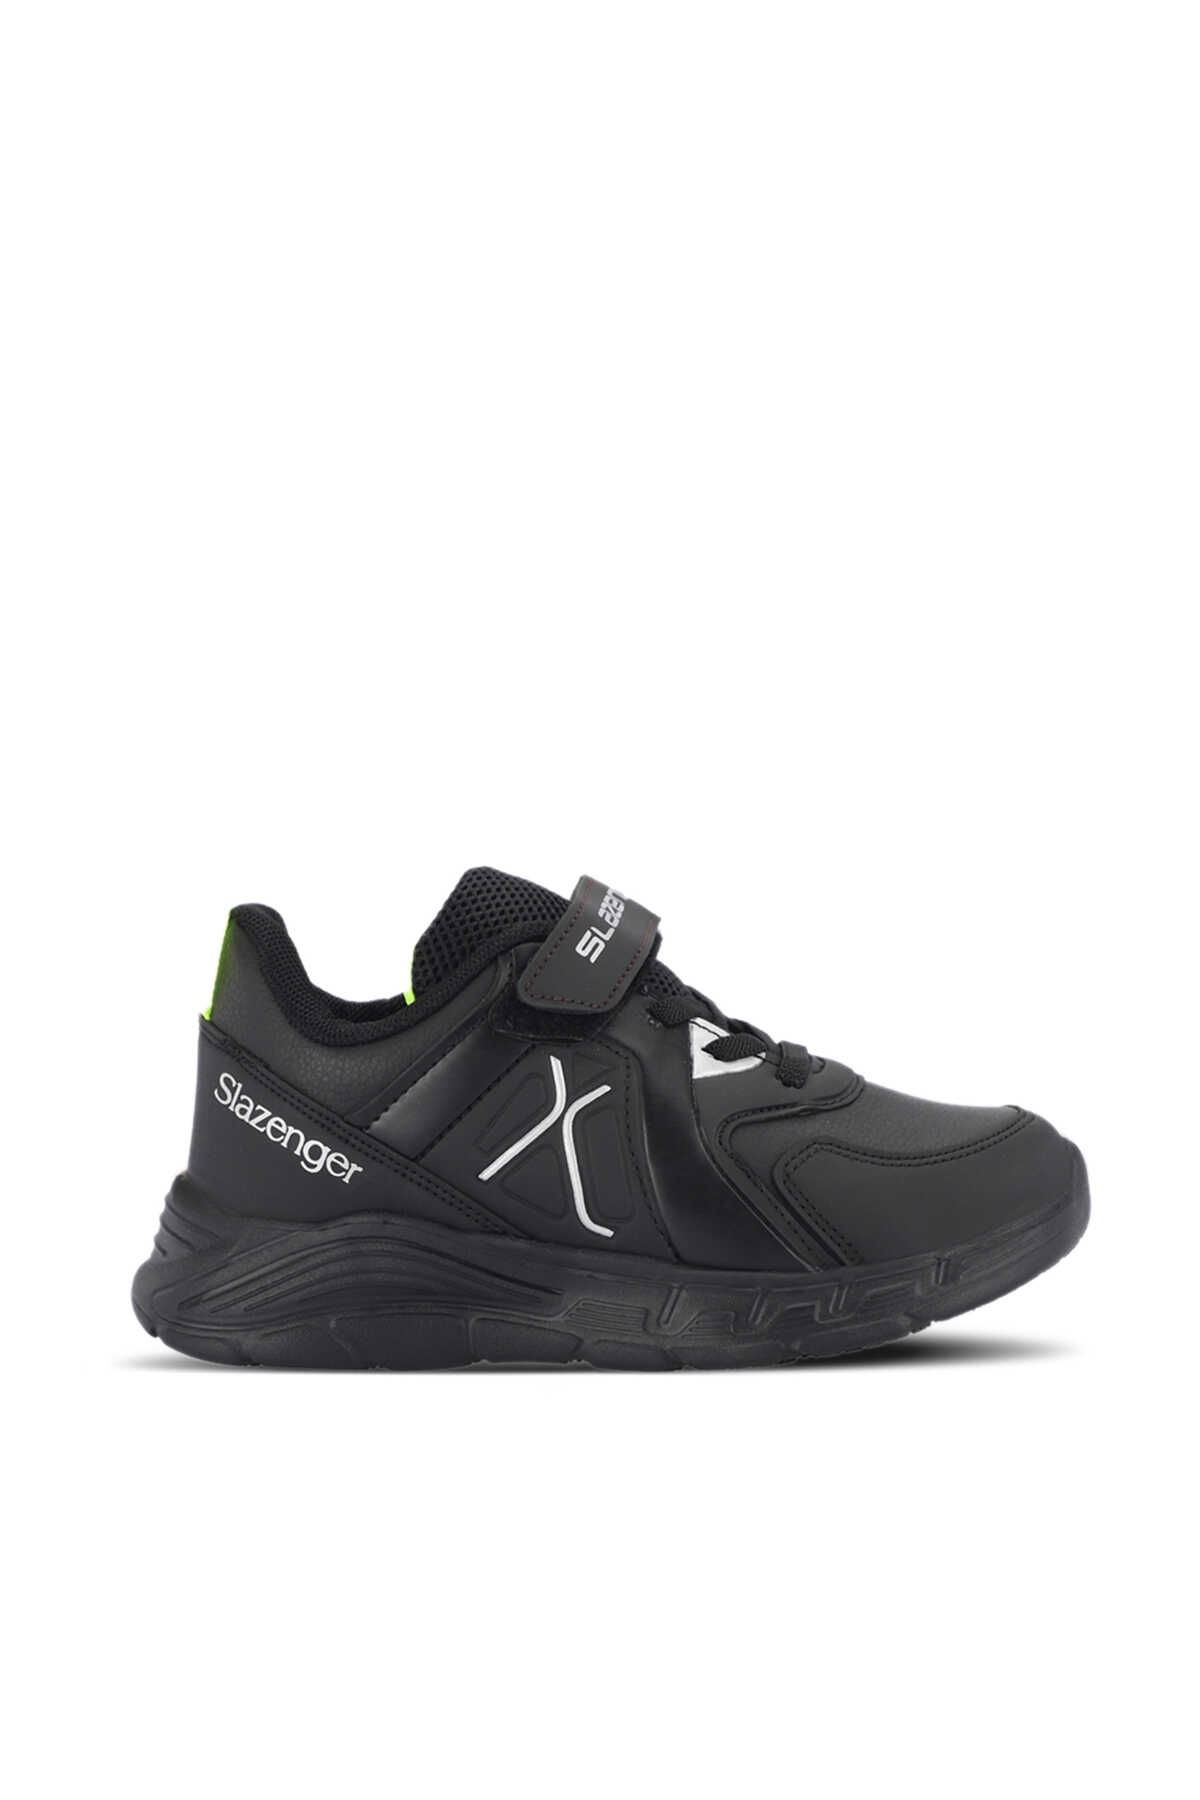 Slazenger - Slazenger VACATION I Sneaker Erkek Çocuk Ayakkabı Siyah / Siyah